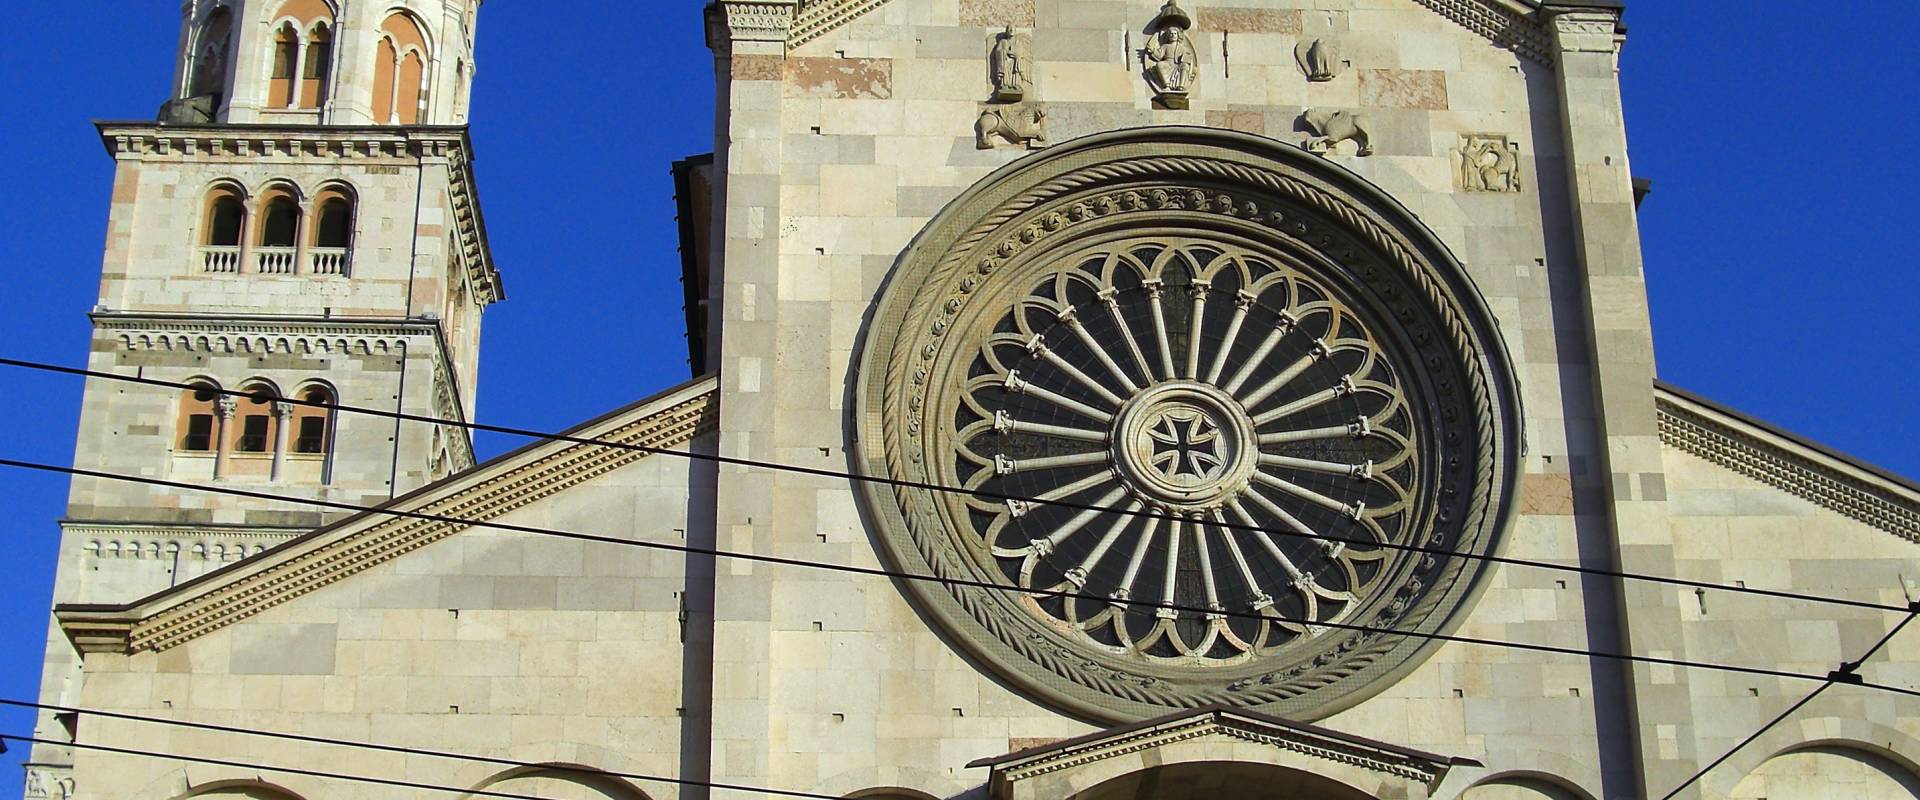 Duomo di Modena e Ghirlandina photo by Matteolel